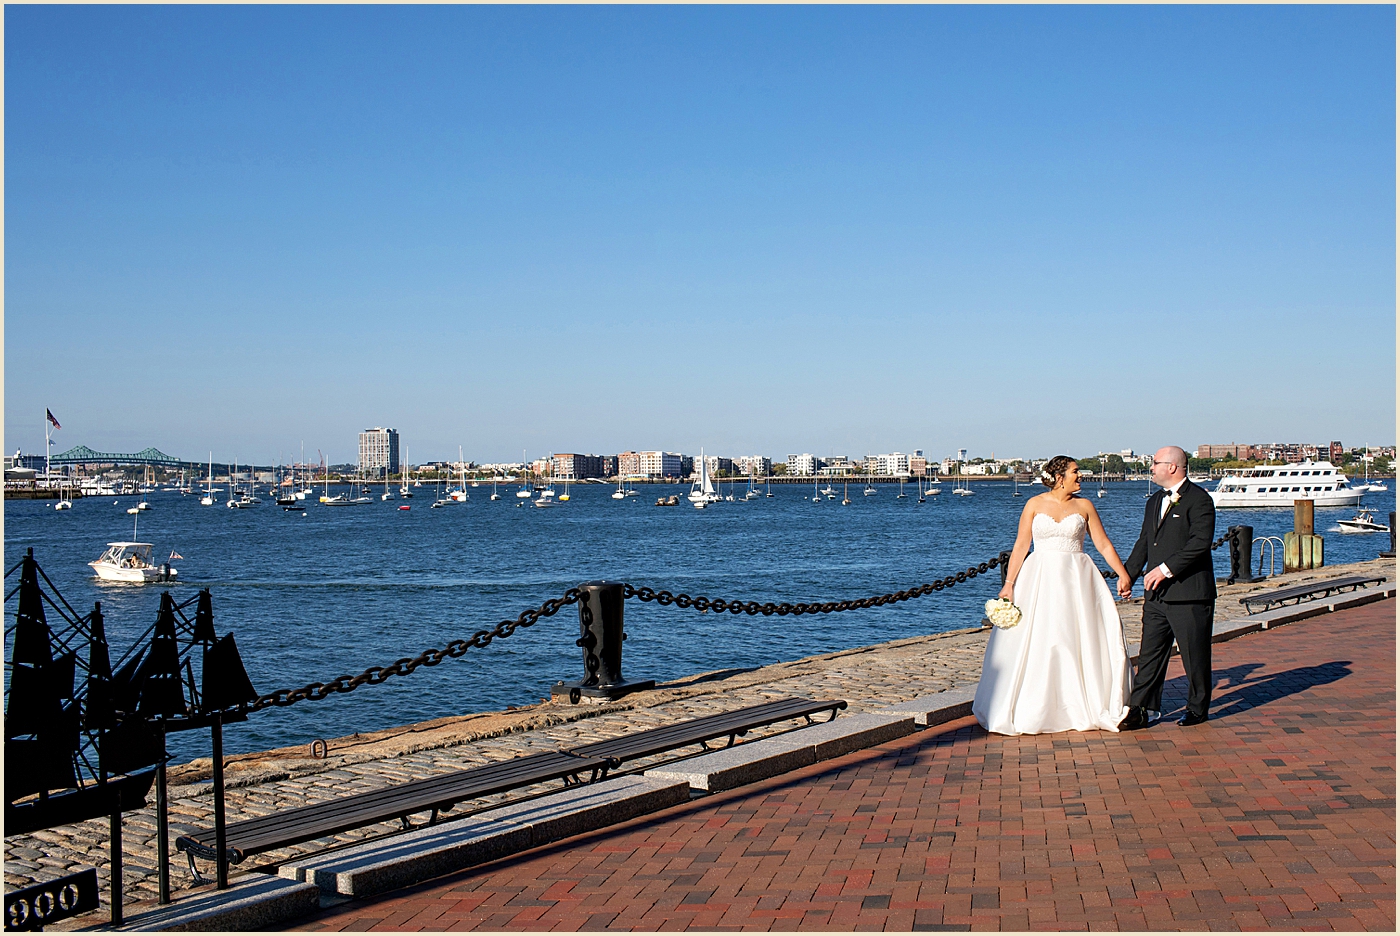 Fan Pier Boston Seaport Wedding 